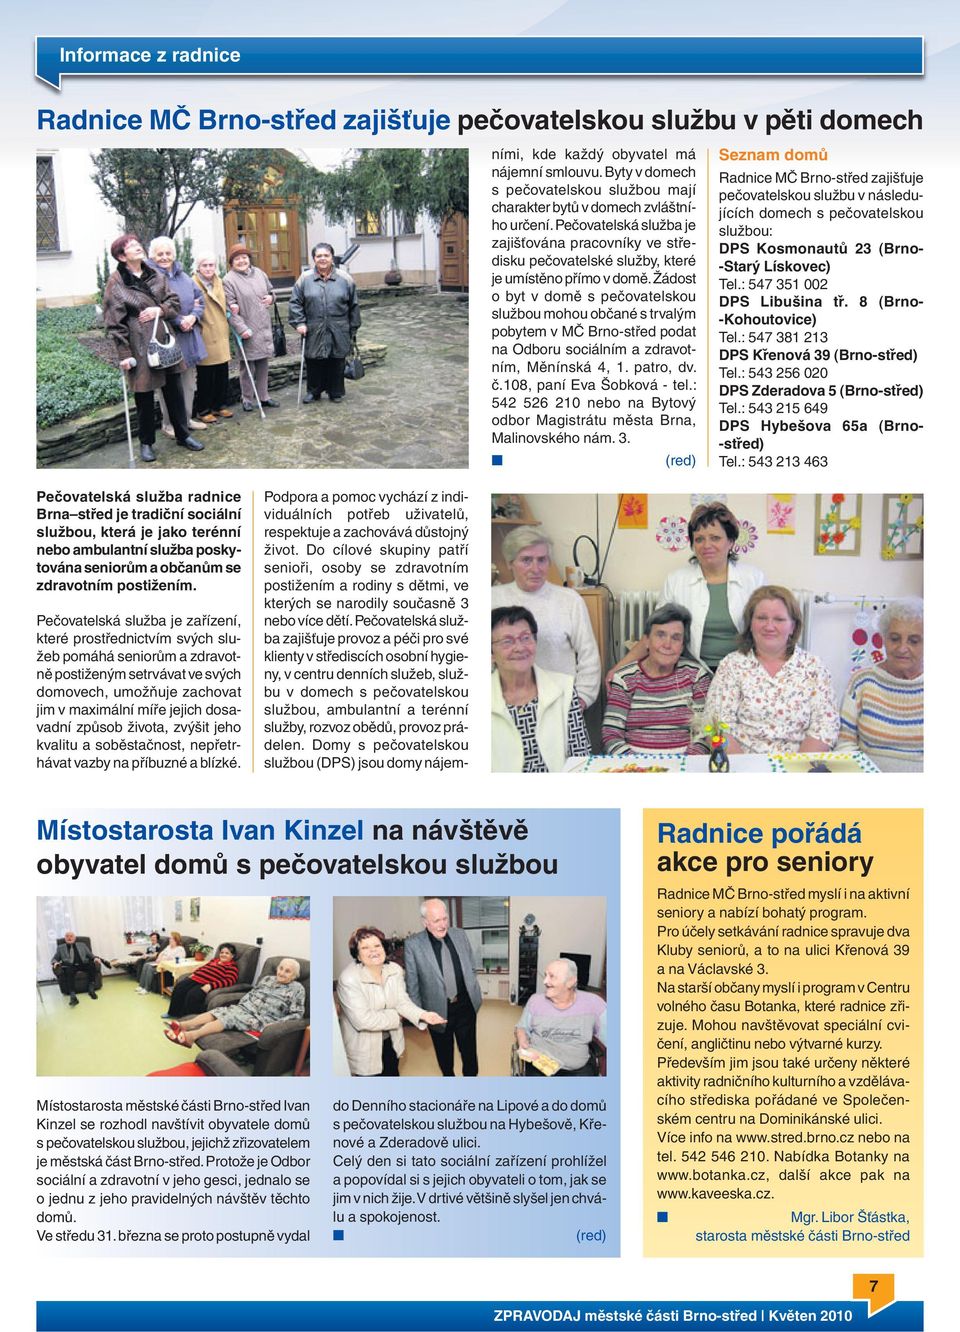 Žádost o byt v domě s pečovatelskou službou mohou občané s trvalým pobytem v MČ Brno-střed podat na Odboru sociálním a zdravotním, Měnínská 4, 1. patro, dv. č.108, paní Eva Šobková - tel.